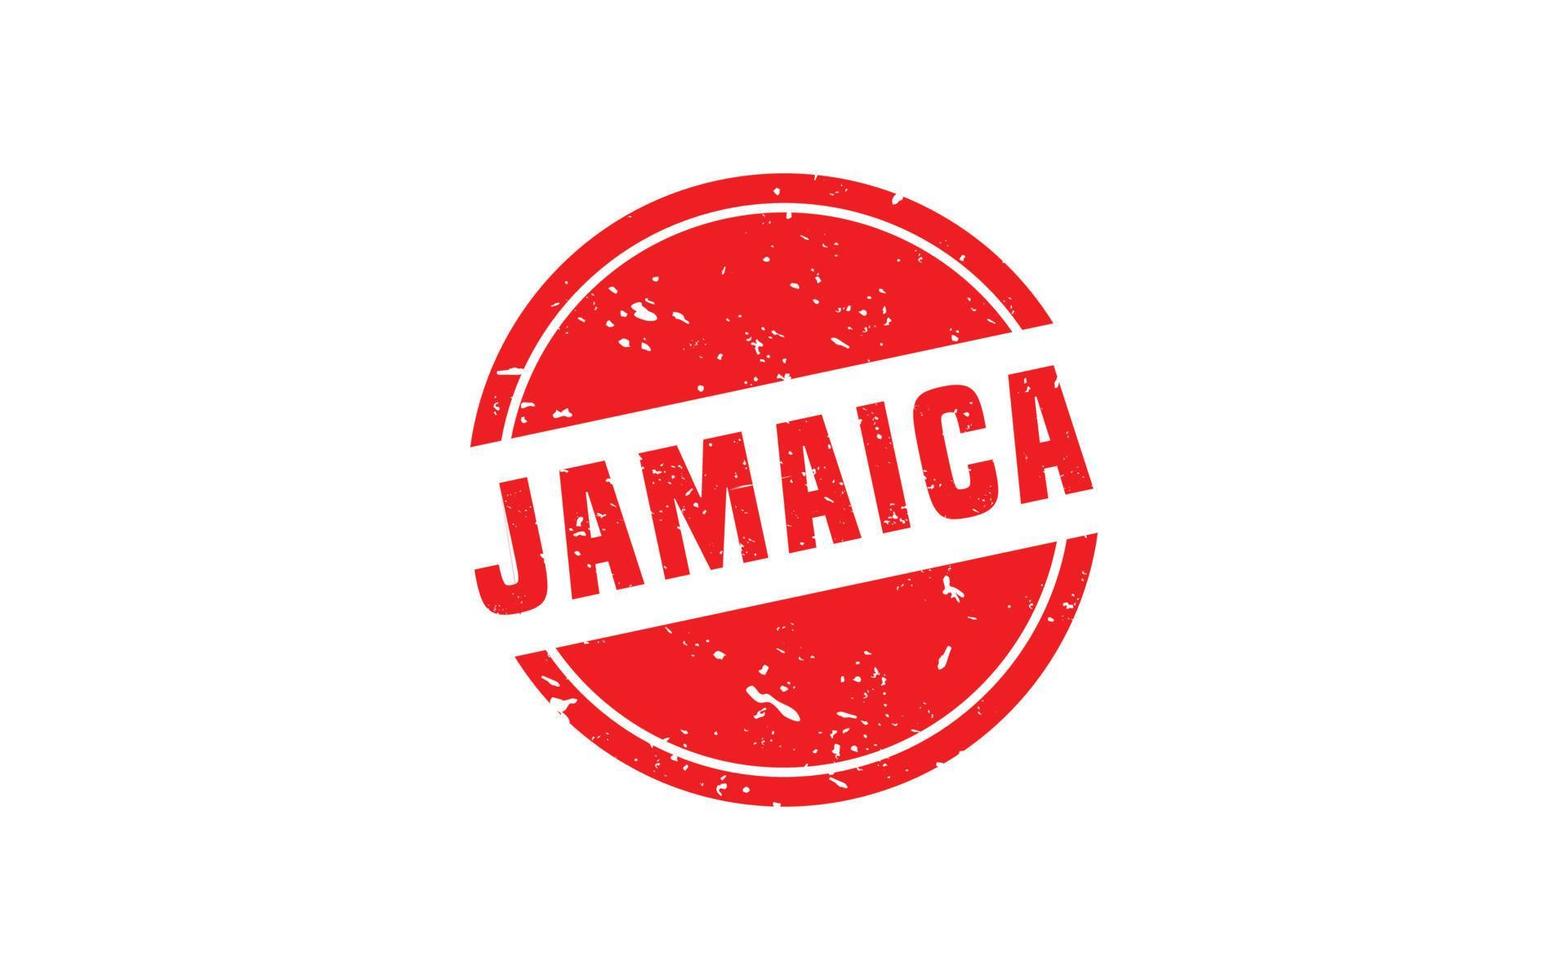 Jamaica postzegel rubber met grunge stijl Aan wit achtergrond vector